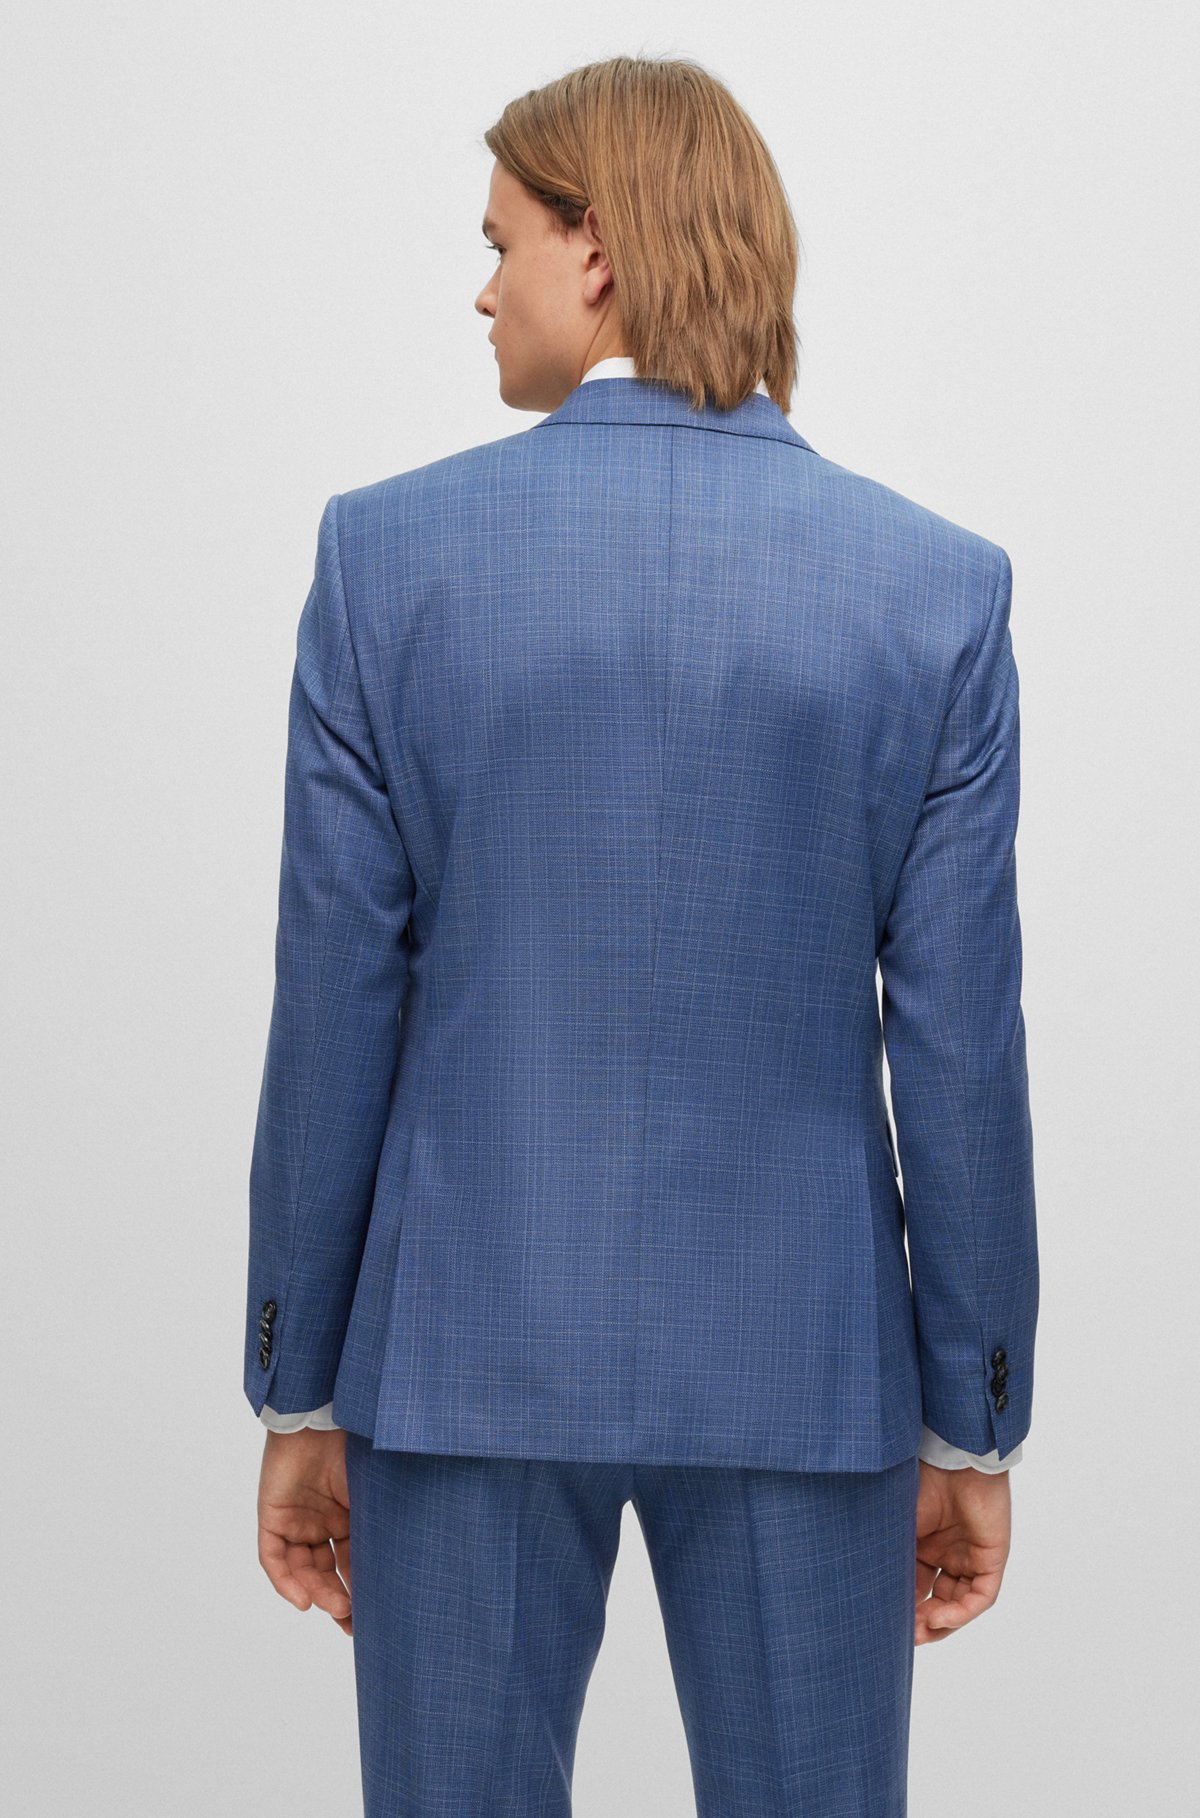 Slim-fit suit in checked virgin-wool serge, Blue